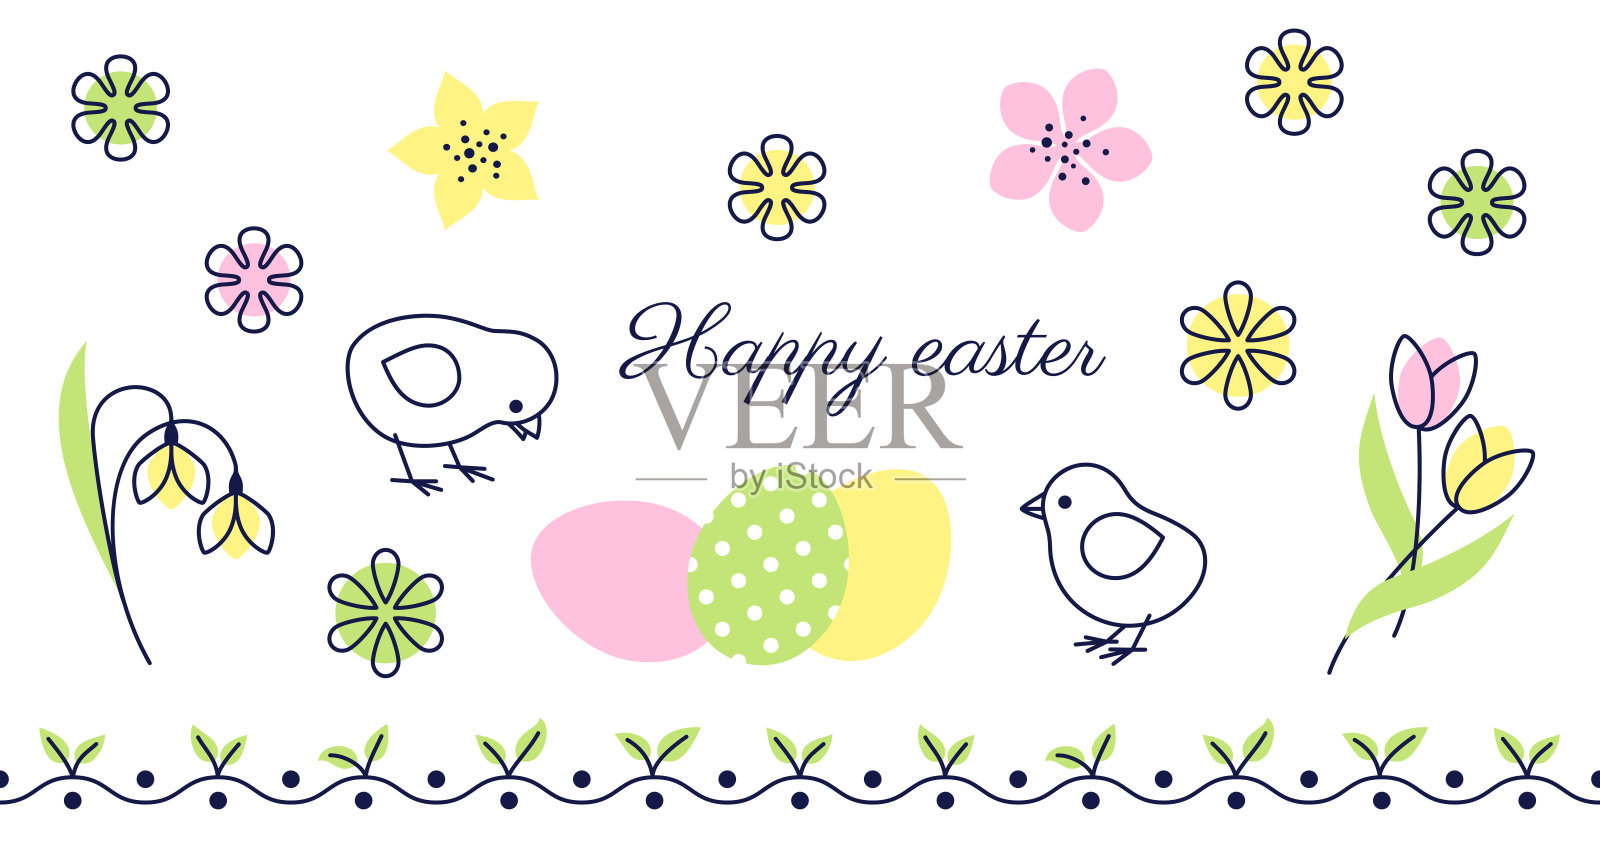 复活节贺卡上有可爱的小鸡、鸡蛋和春天的鲜花插画图片素材